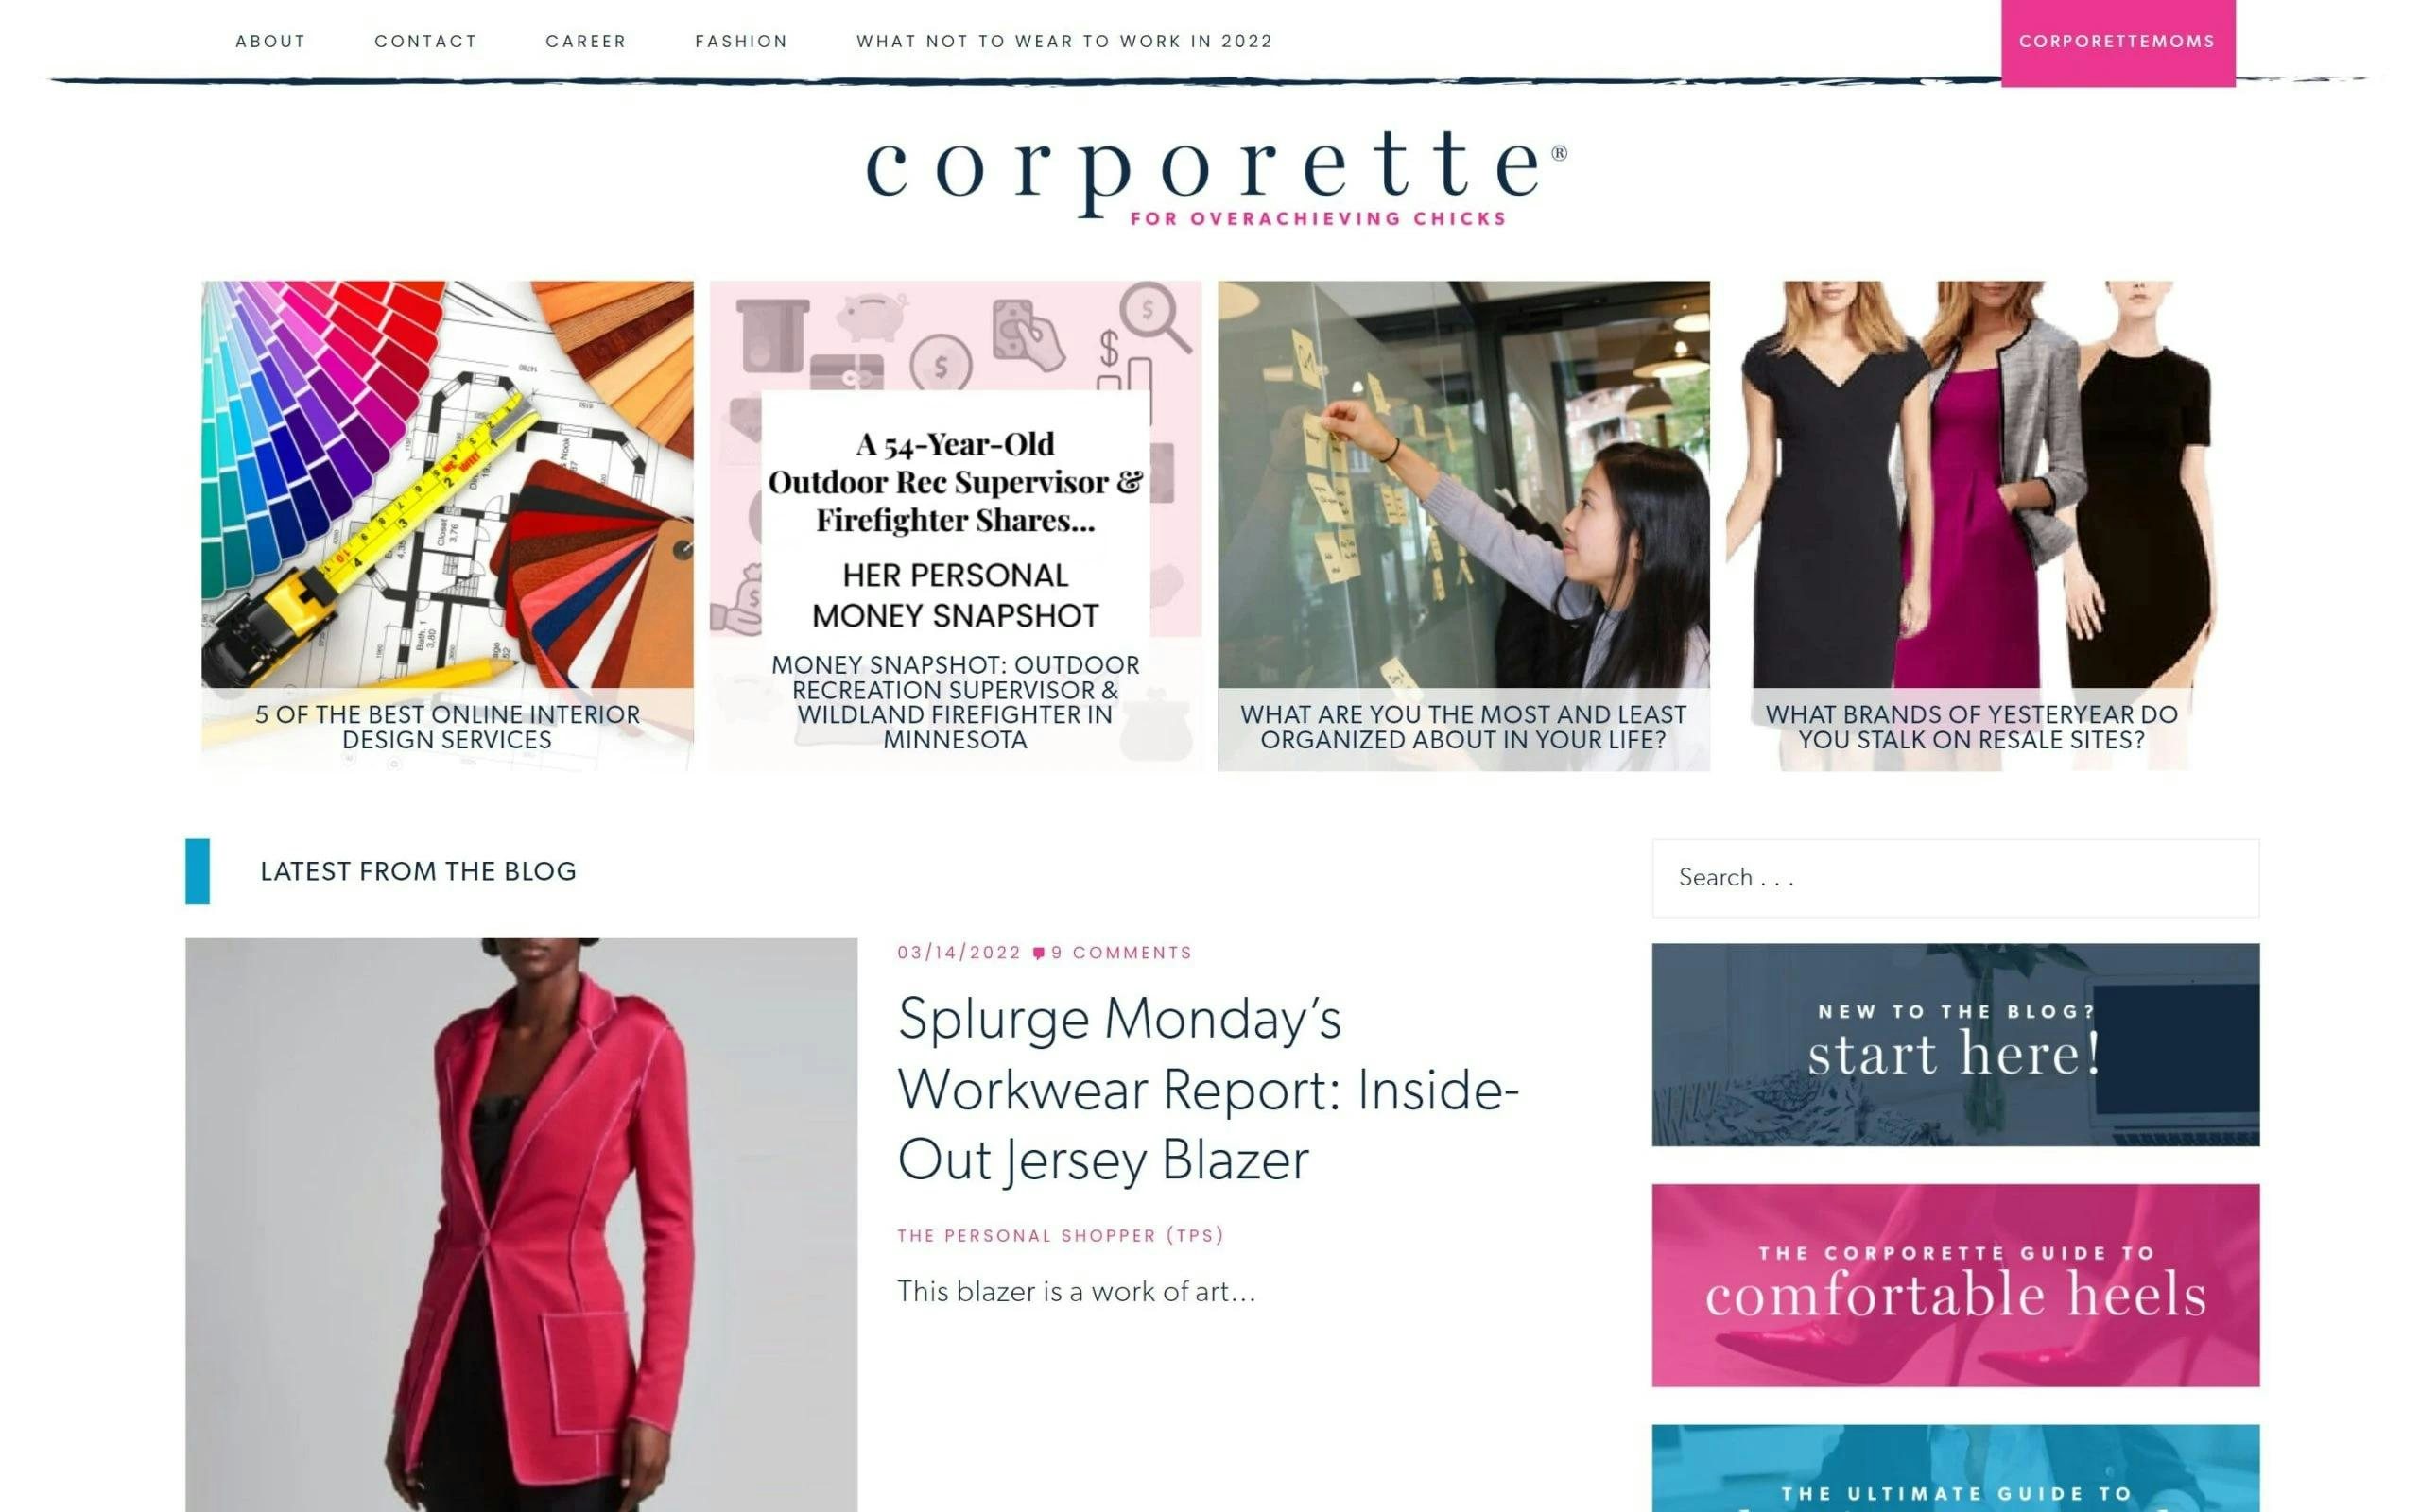 Corporette blog for women